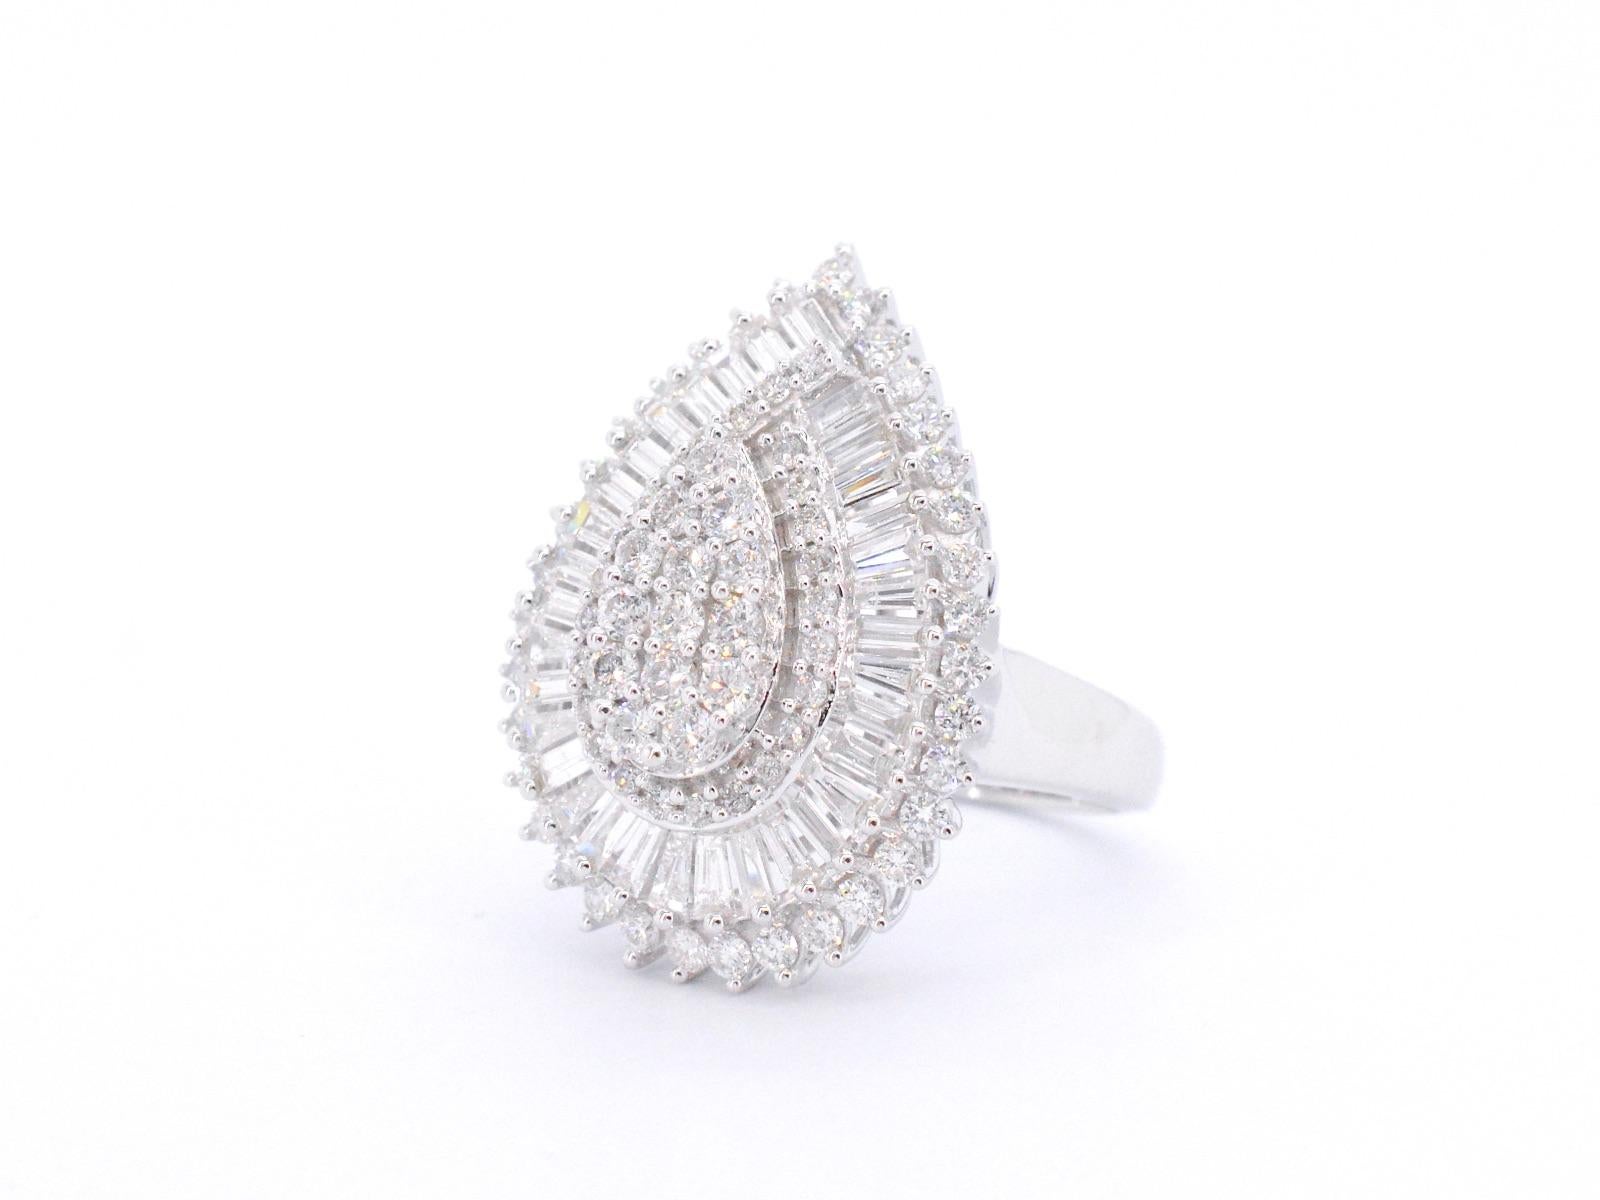 Dieser exklusive Ring aus Weißgold ist ein wahres Schmuckstück mit einer atemberaubenden tropfenförmigen Entourage-Fassung, in der 2,75 Karat Diamanten im Brillant- und Baguetteschliff funkeln. Die Diamanten sind fachmännisch angeordnet, um ein